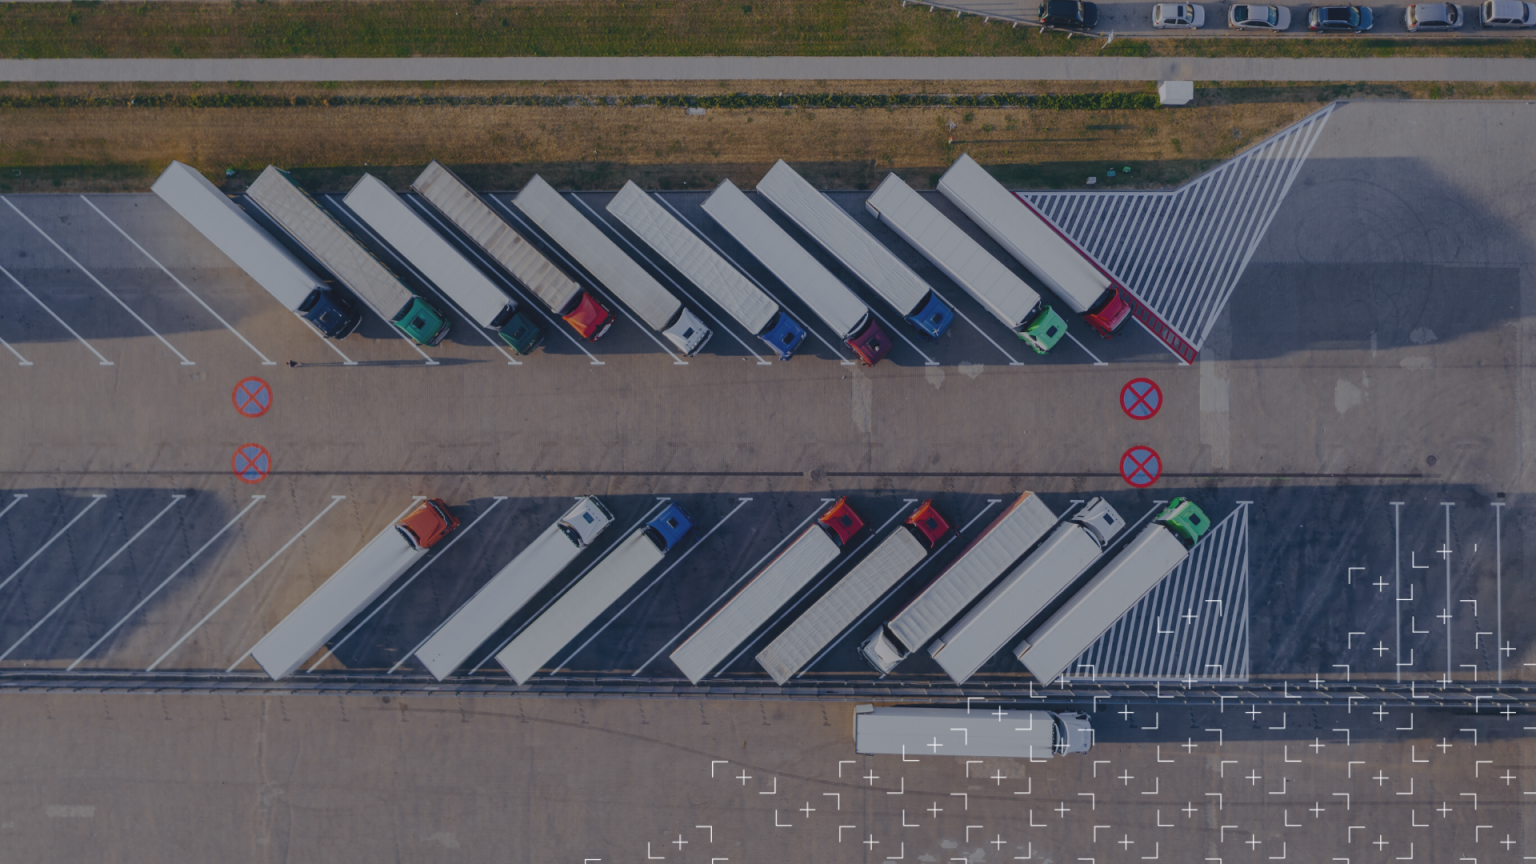 Dieciocho camiones estacionados vistos desde arriba